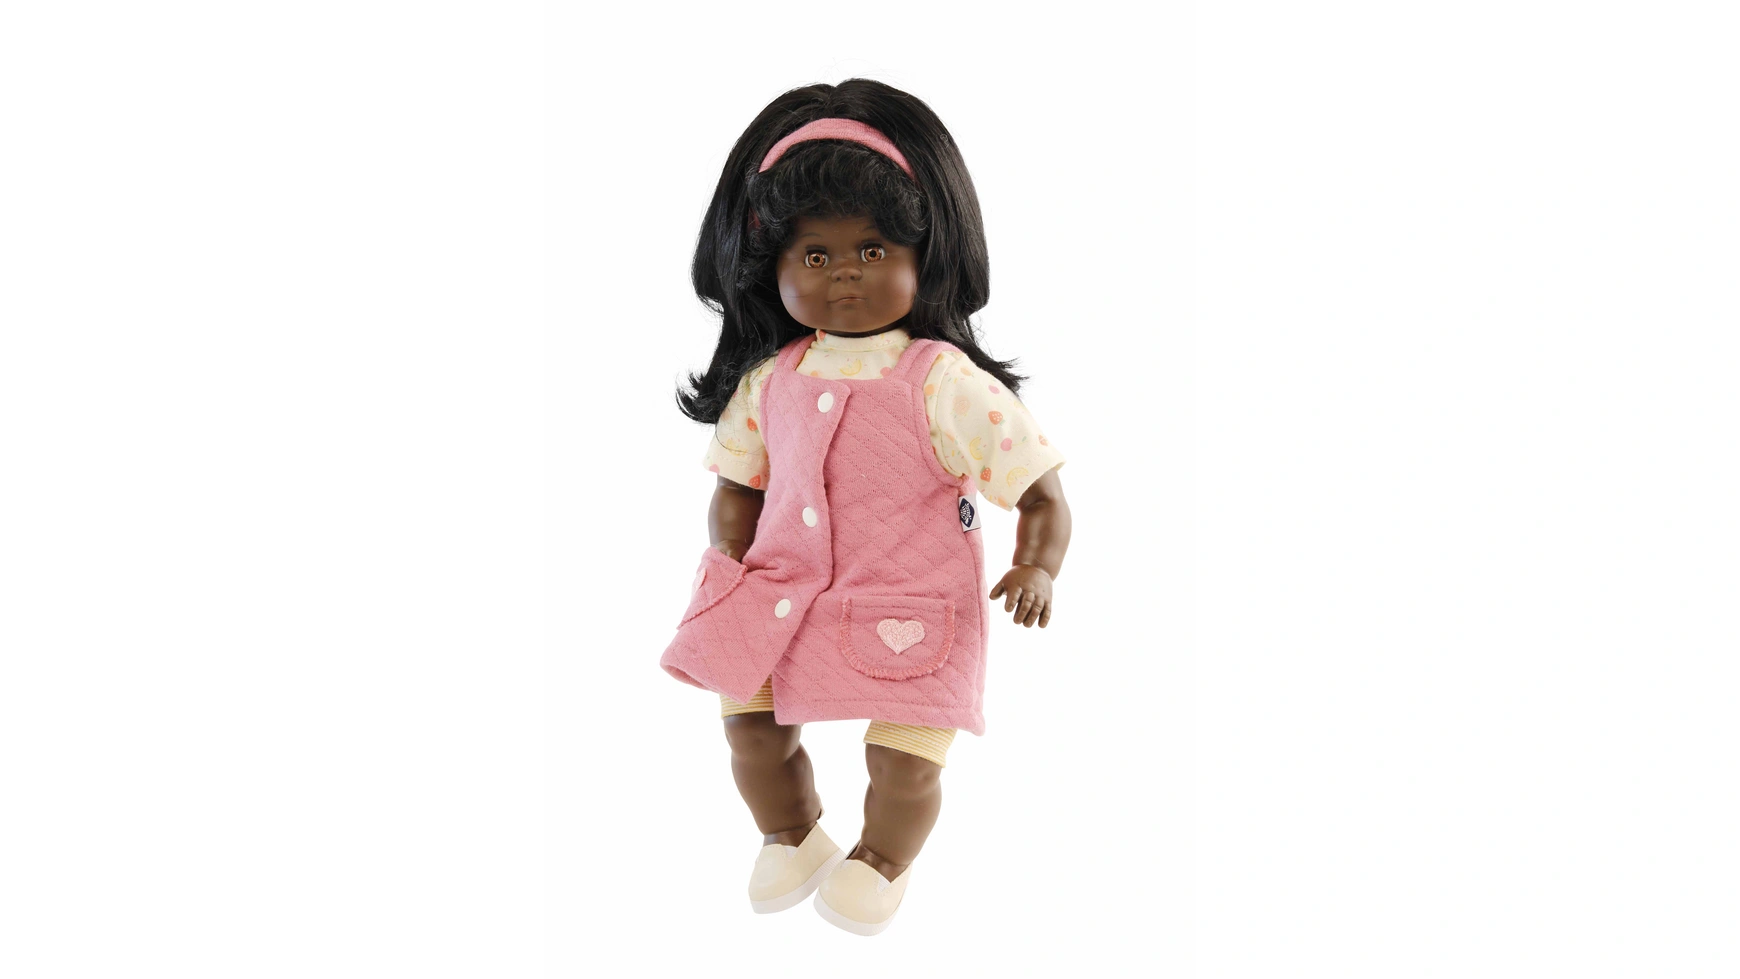 Schildkroet-Puppen Кукла Шлюммерле черная 37 см черные волосы, карие сонные глаза, летняя одежда клубника